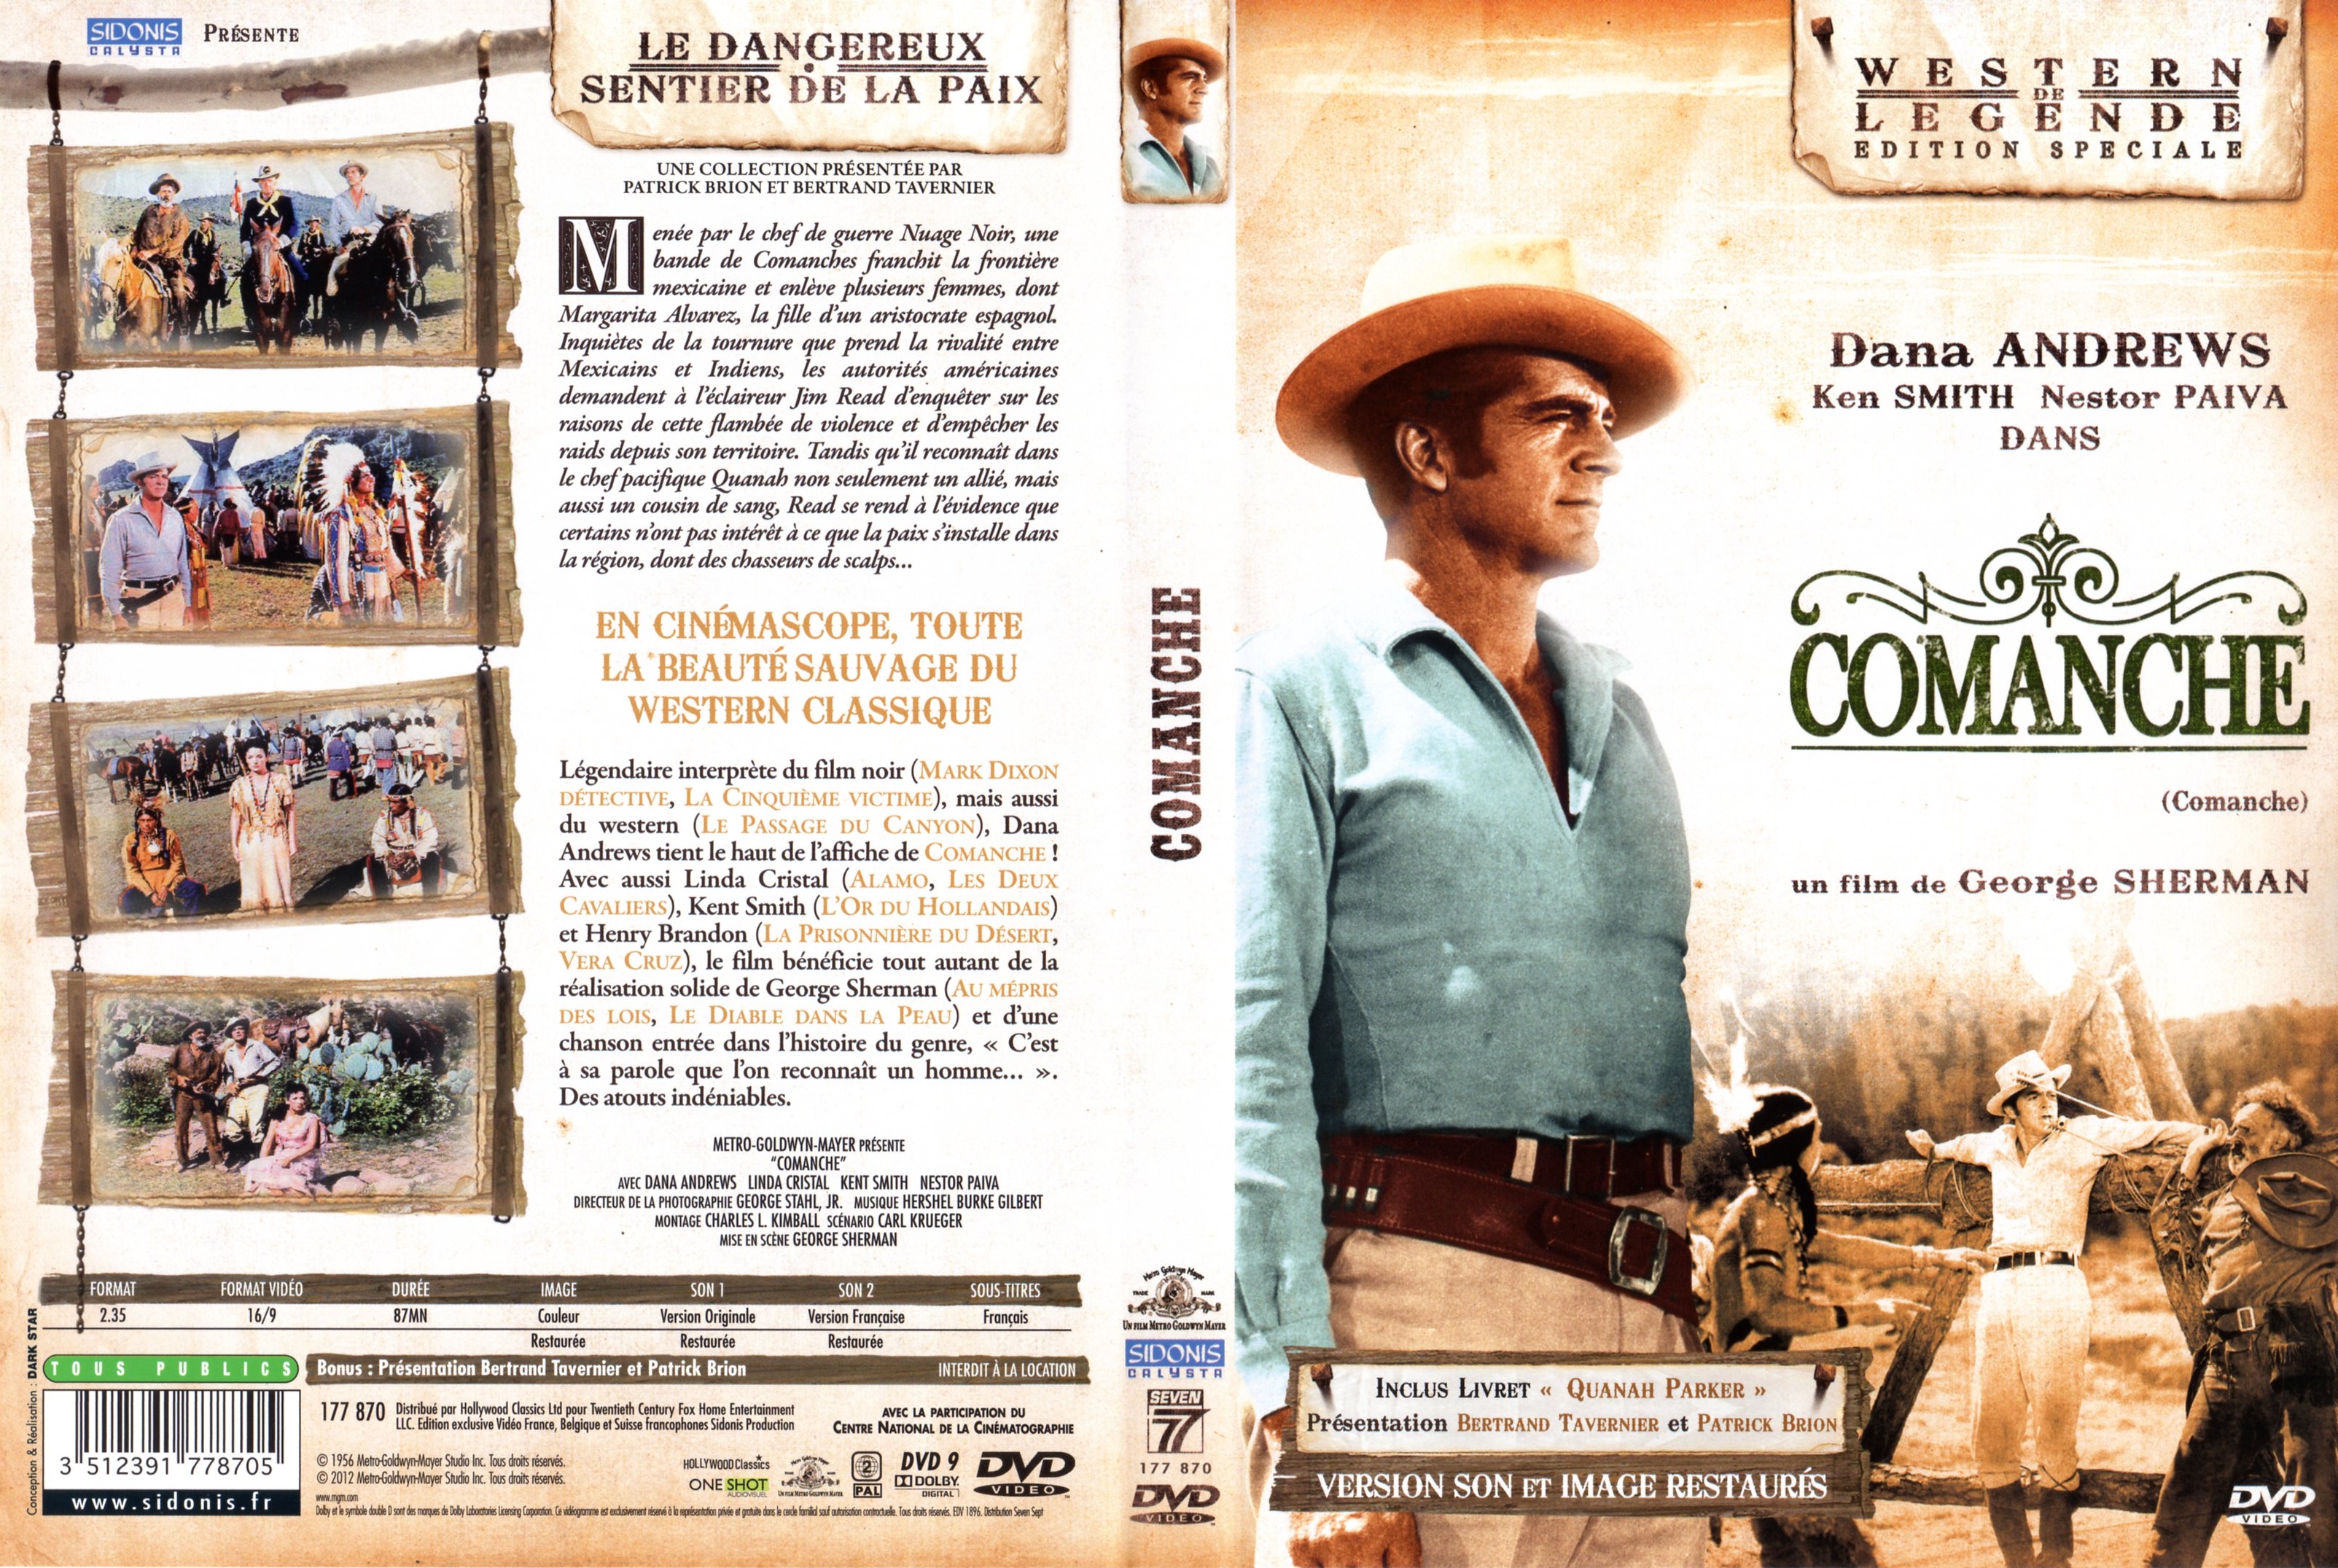 Jaquette DVD Comanche